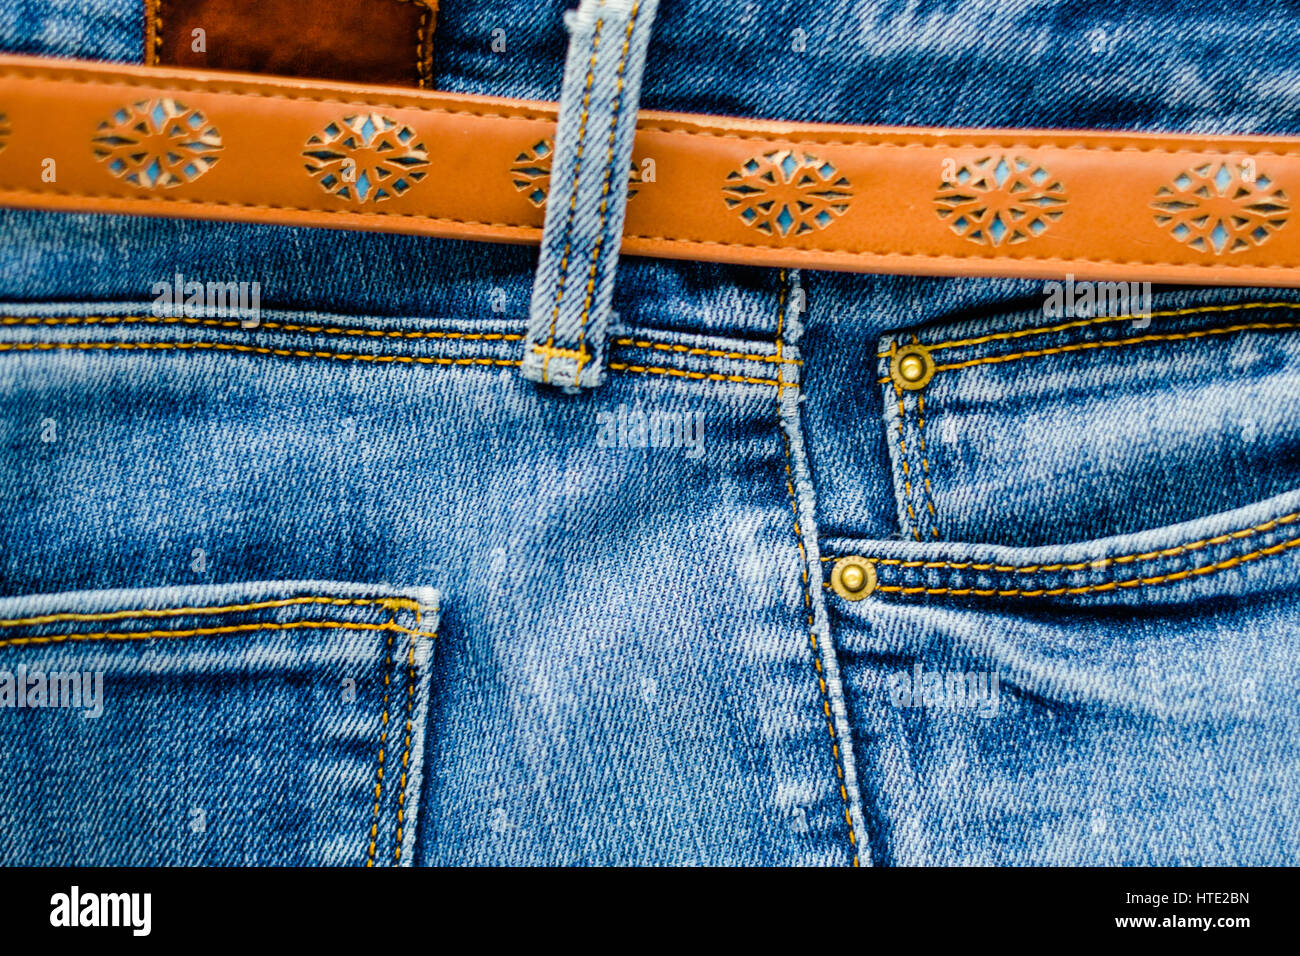 Detail der Jeans Hose mit braunem Leder Gürtel Nahaufnahme. Taschen, Hosen,  Gürtelschlaufen, Dicke Stiche. Elemente der Denim-Hosen-Hintergrund  Stockfotografie - Alamy